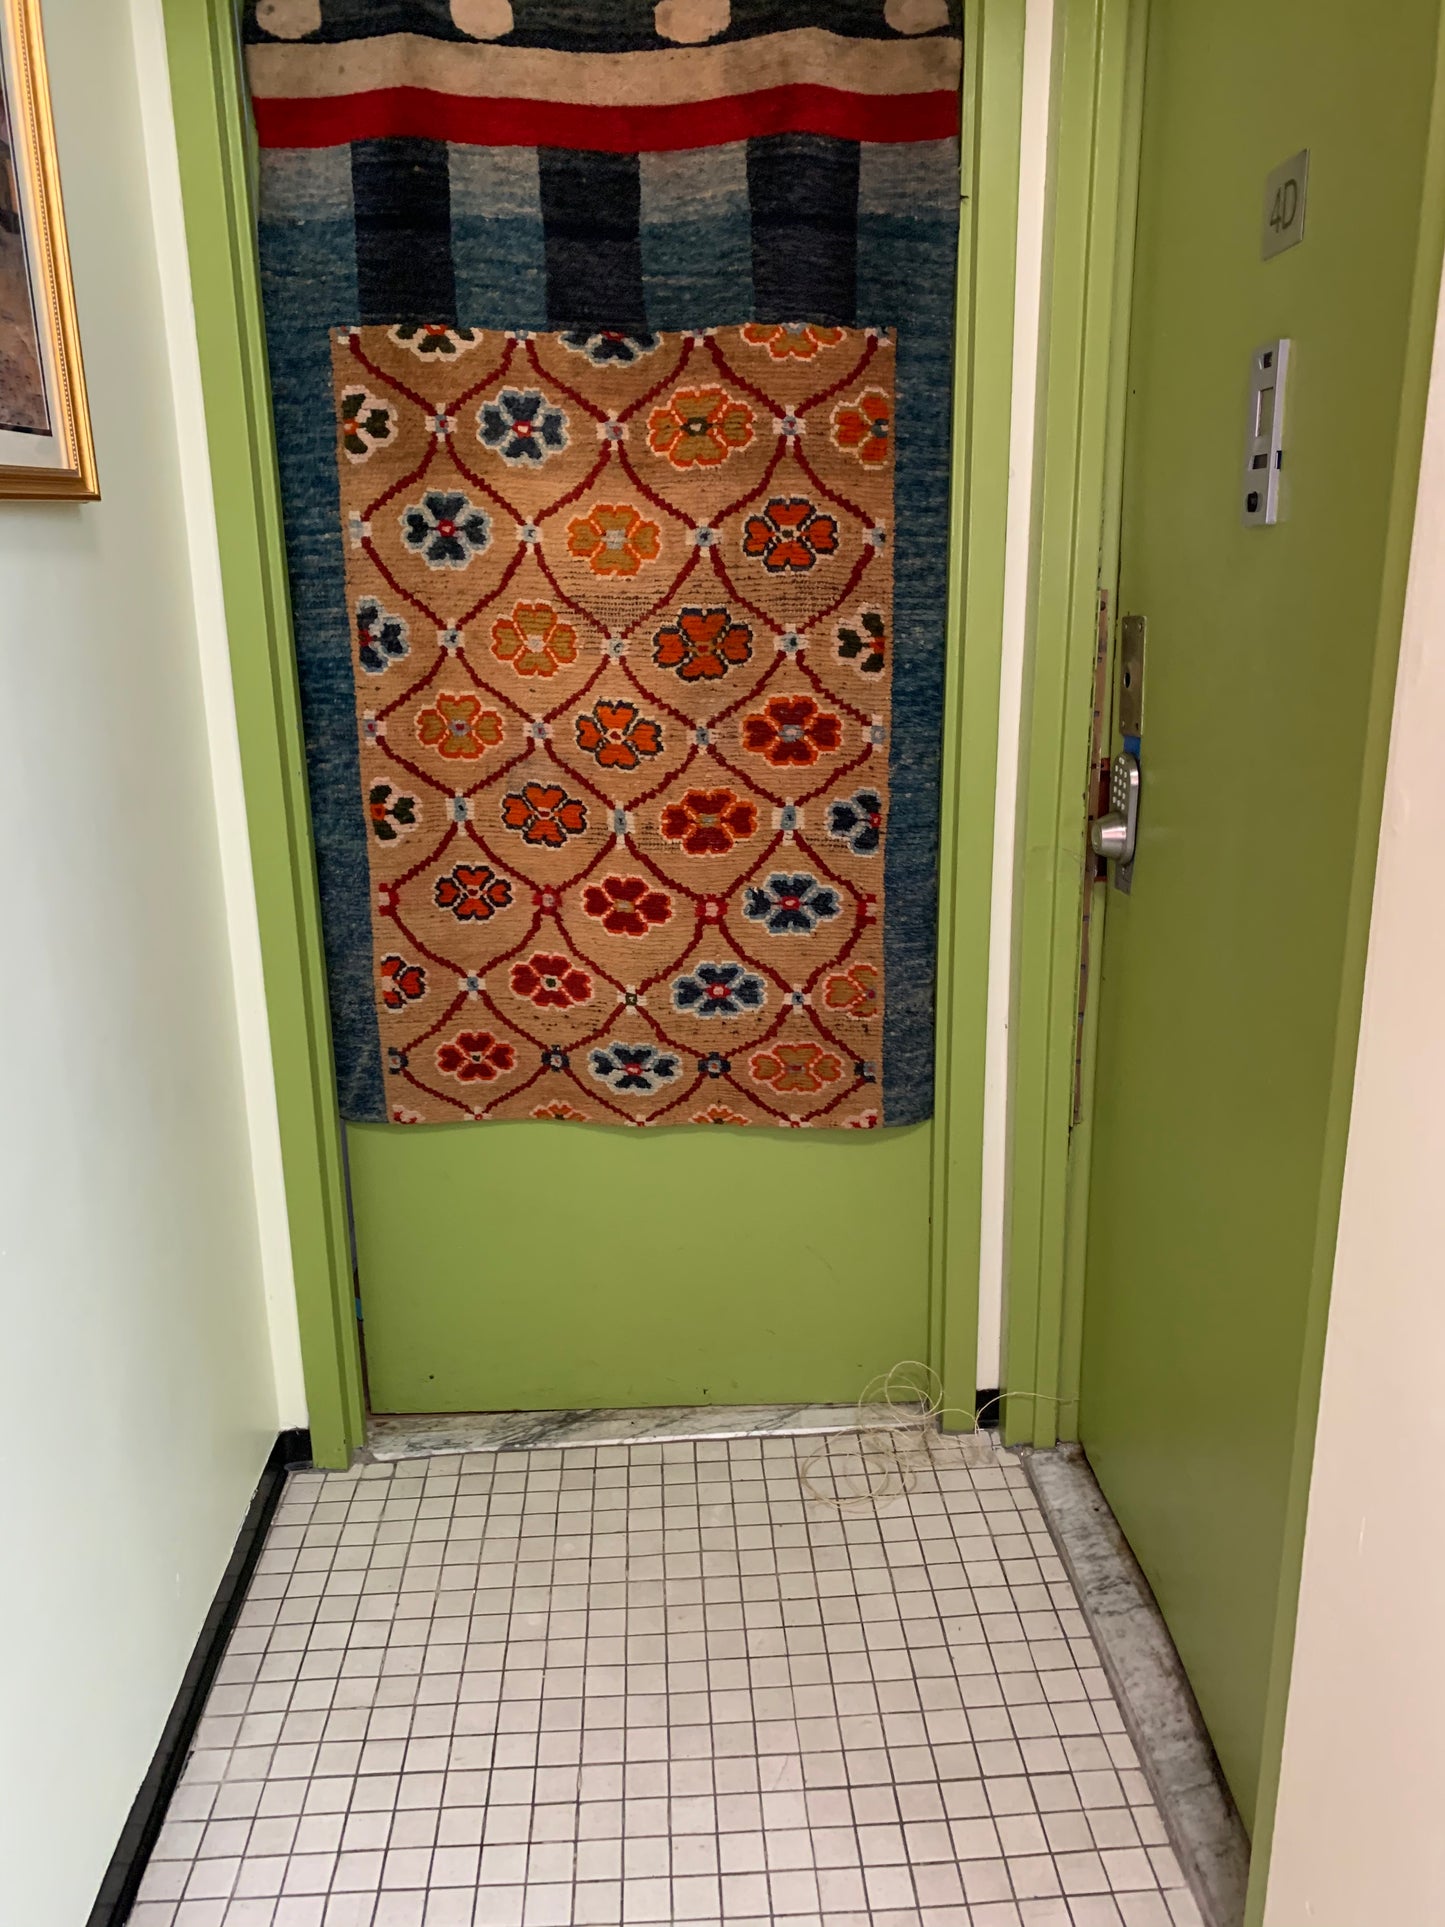 An antique Tibetan door curtain rug